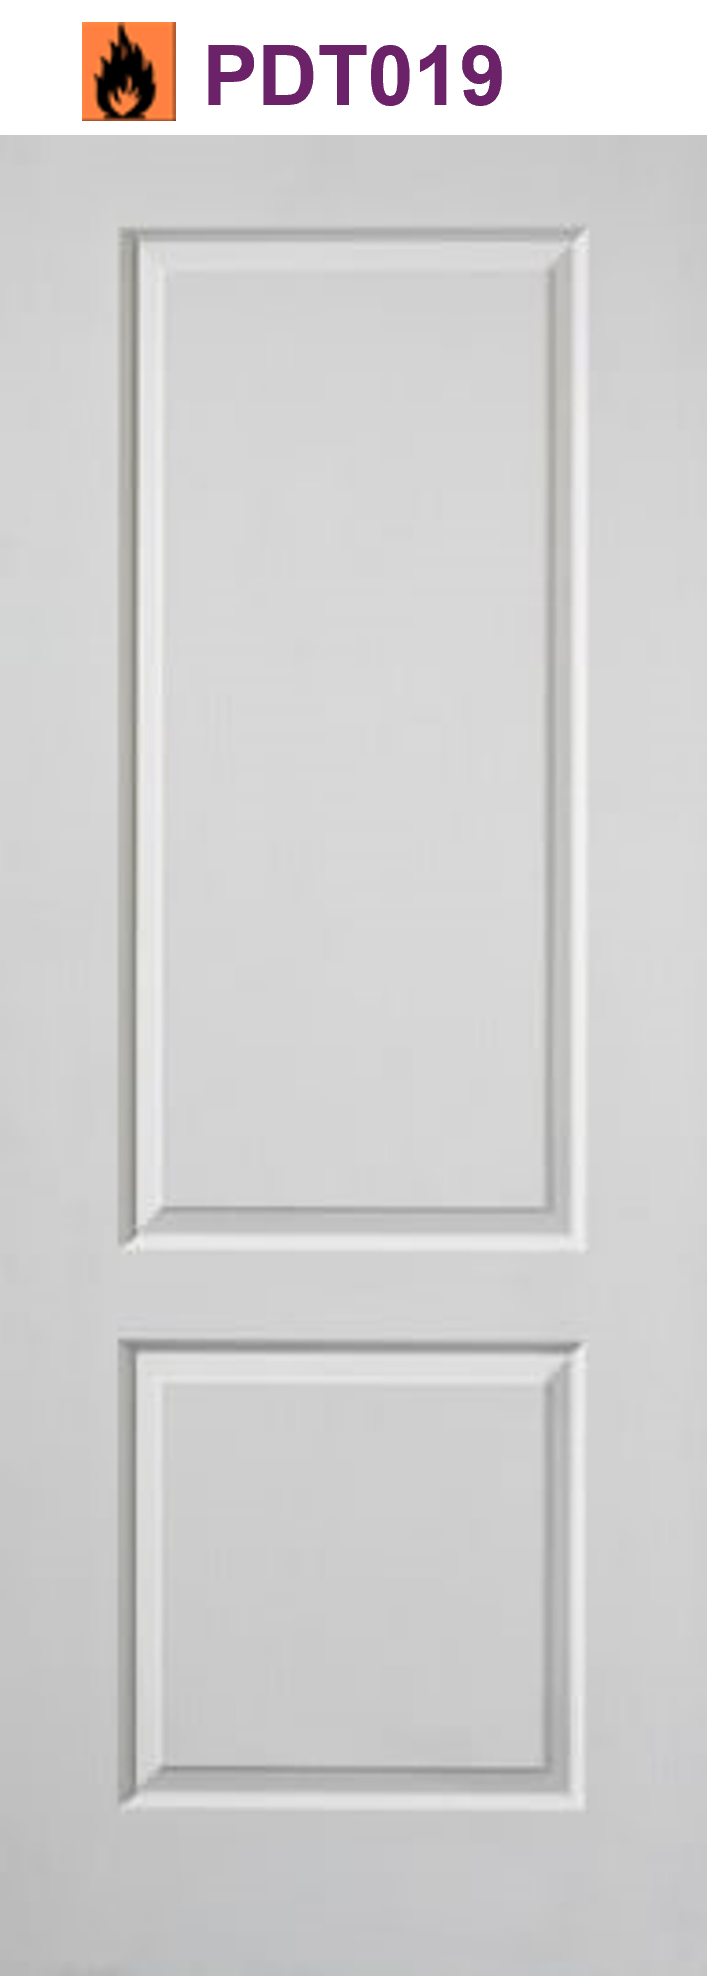 Caprice white primed interior door